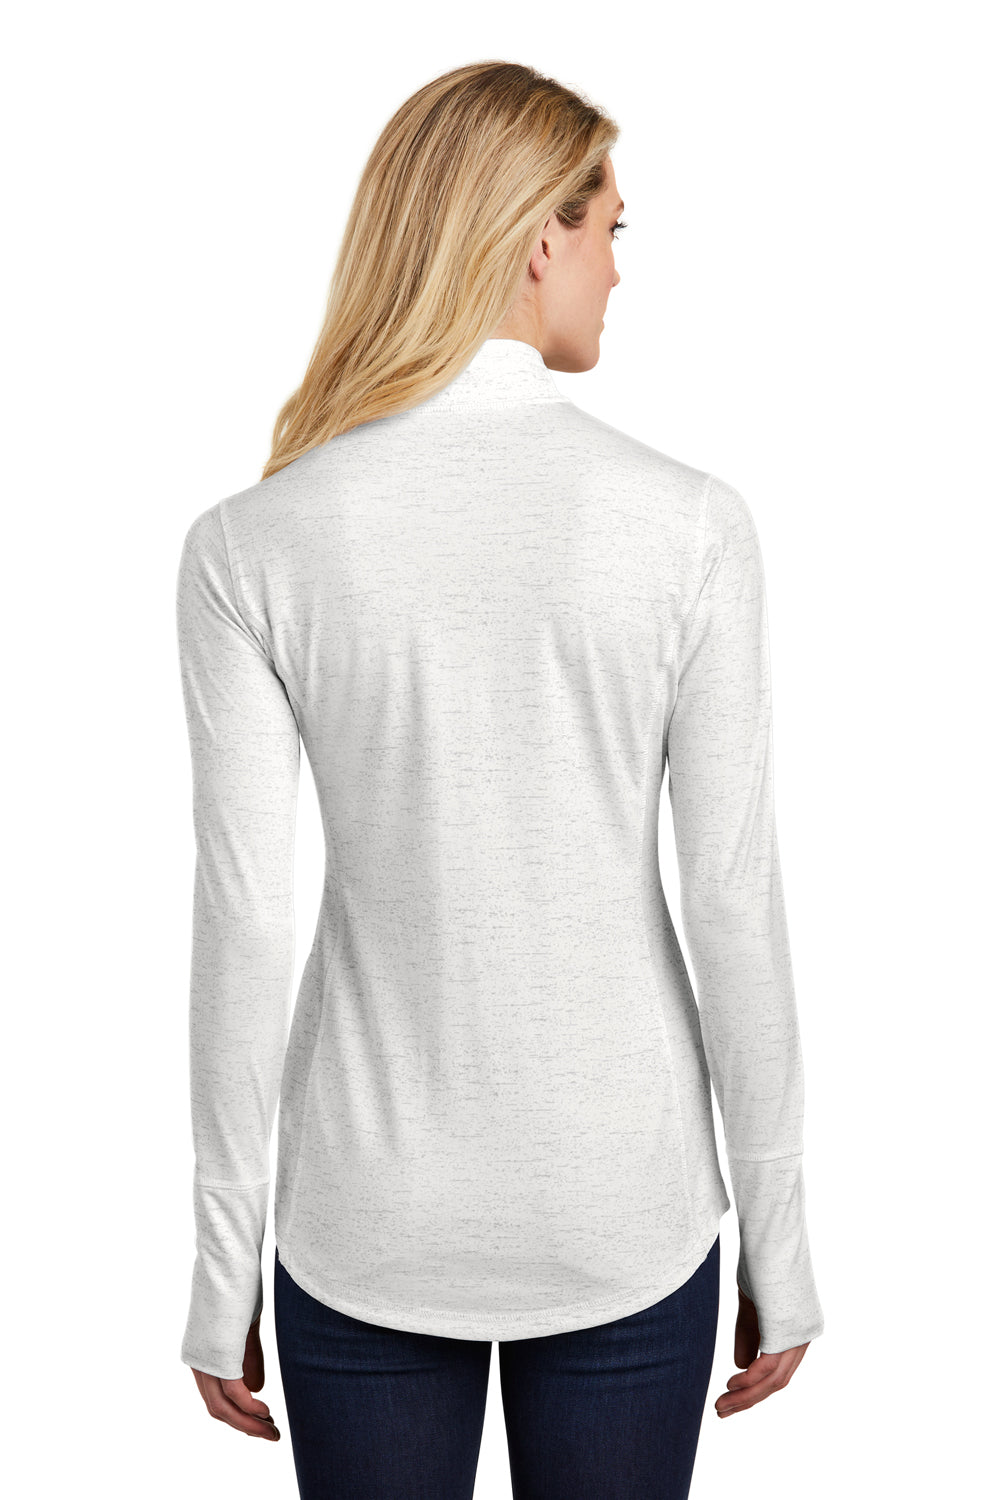 Sport-Tek LST855 Womens Sport-Wick Moisture Wicking 1/4 Zip Sweatshirt White Back